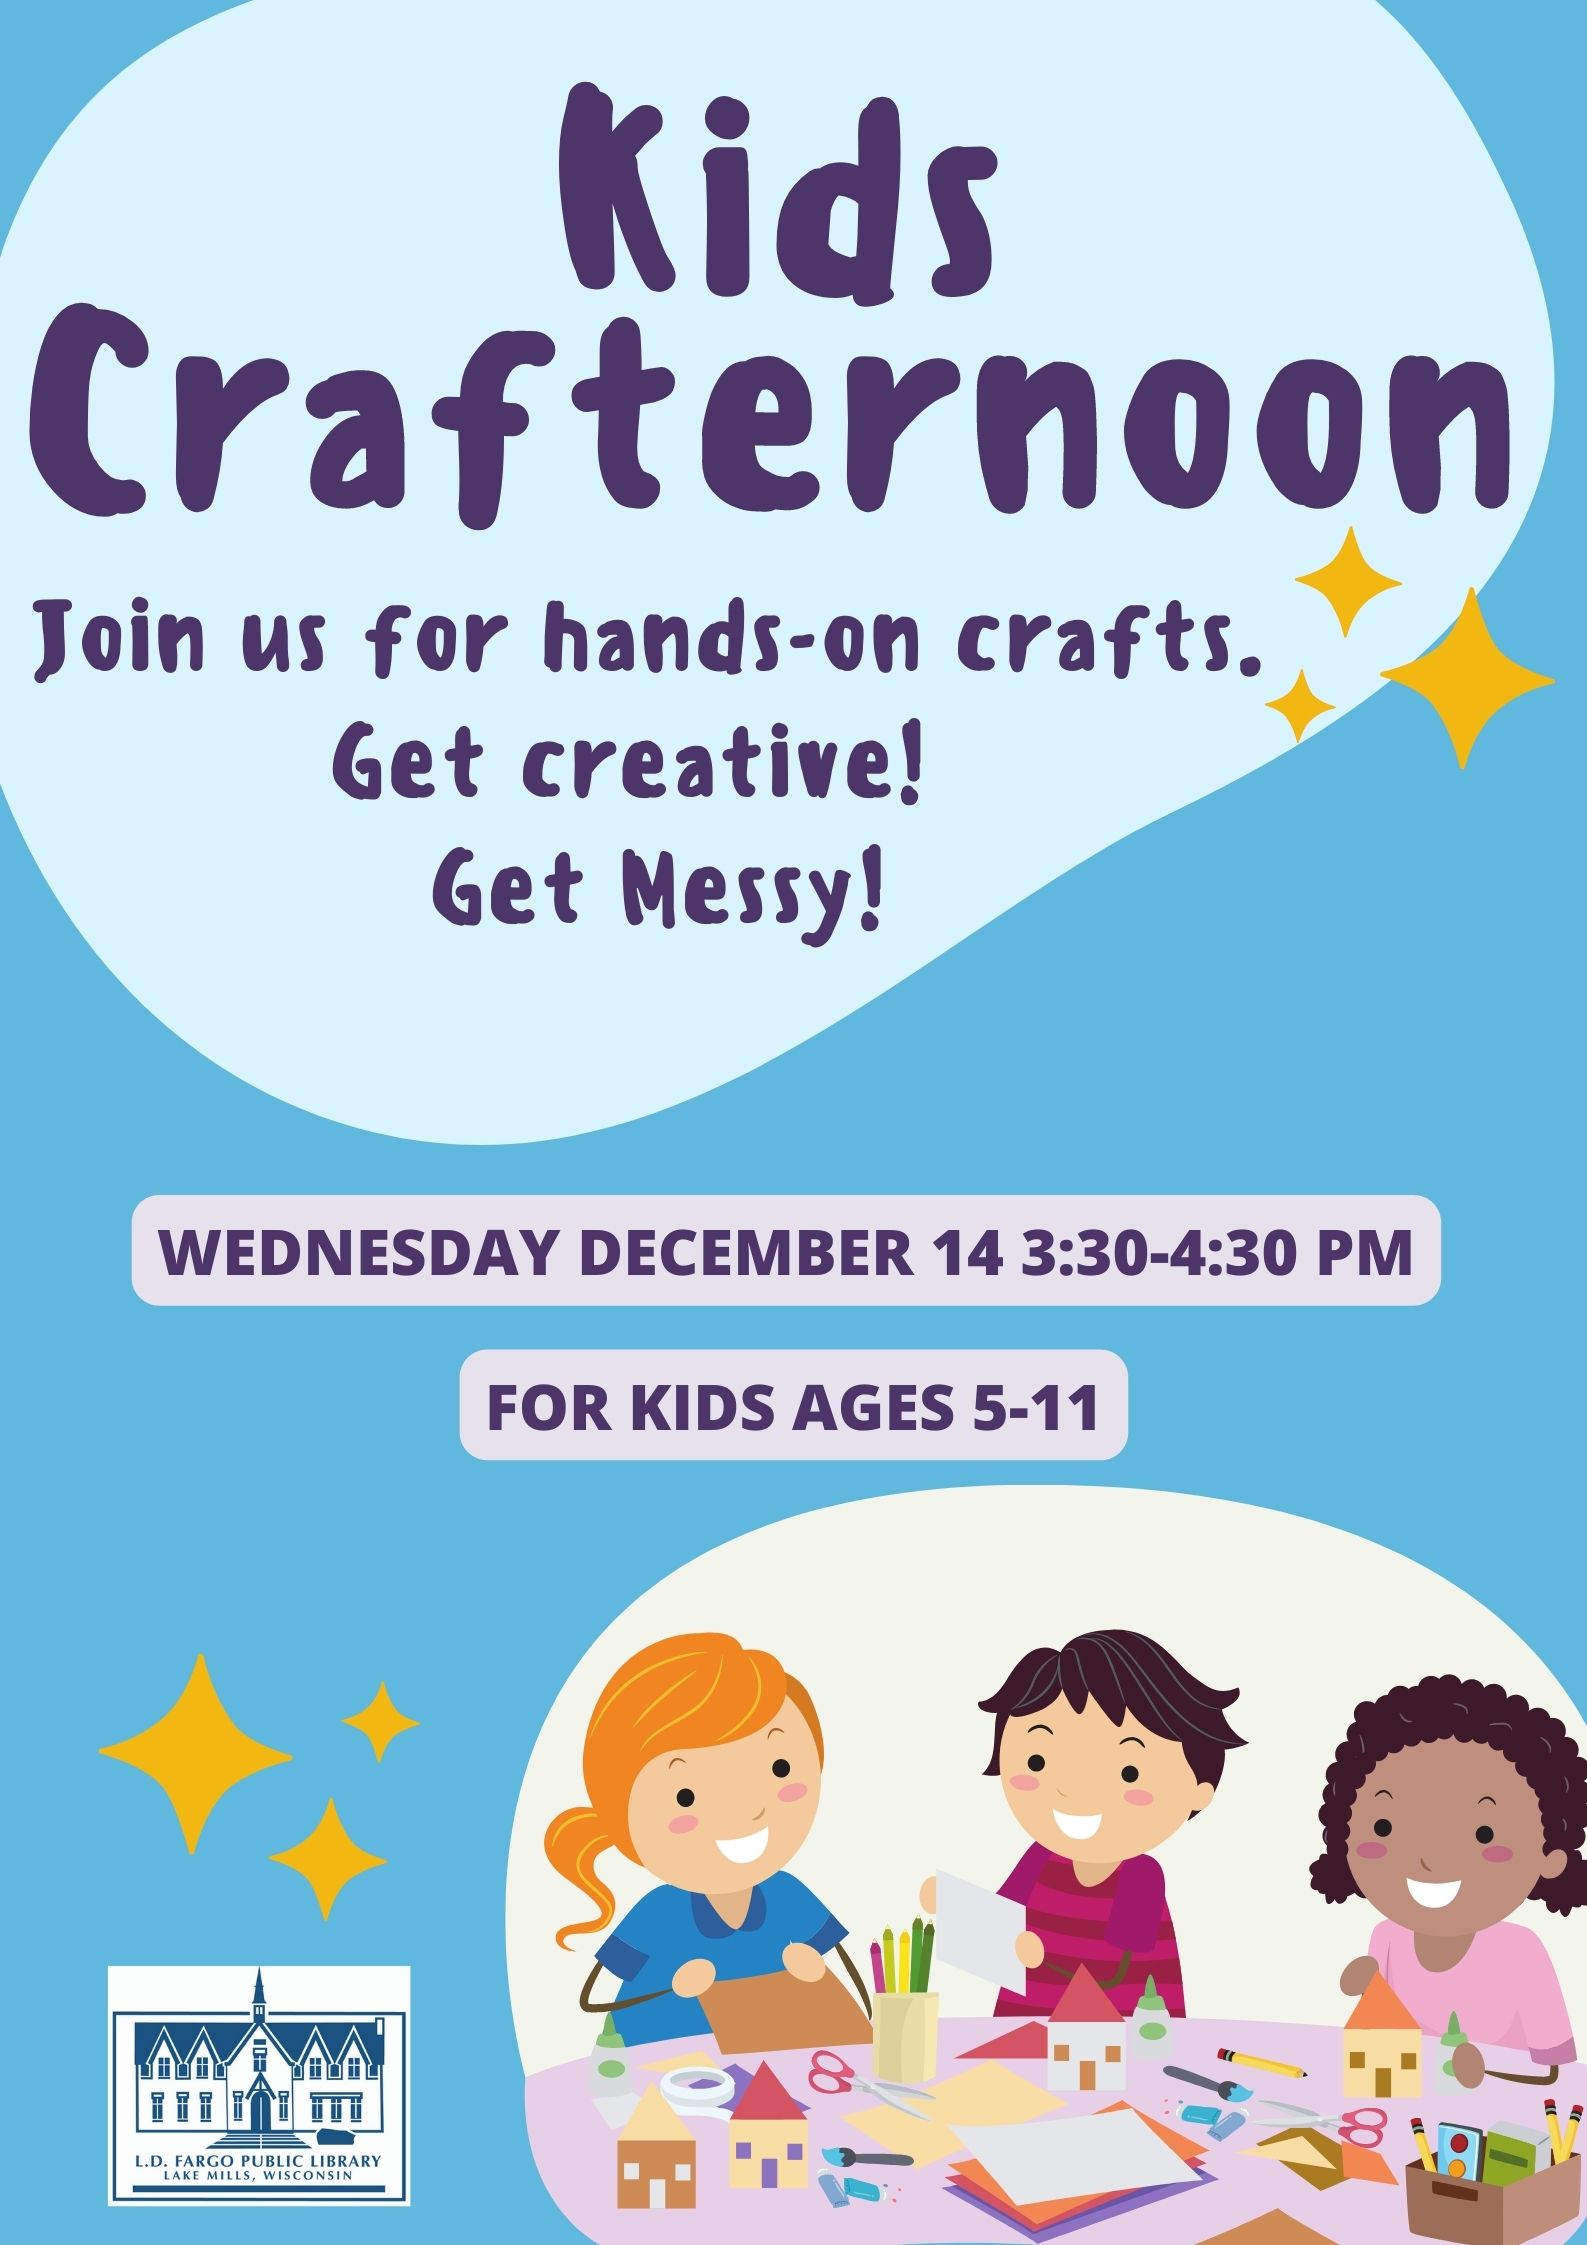 Kids Crafternoon. Wednesday December 14 3:30-4:30 PM